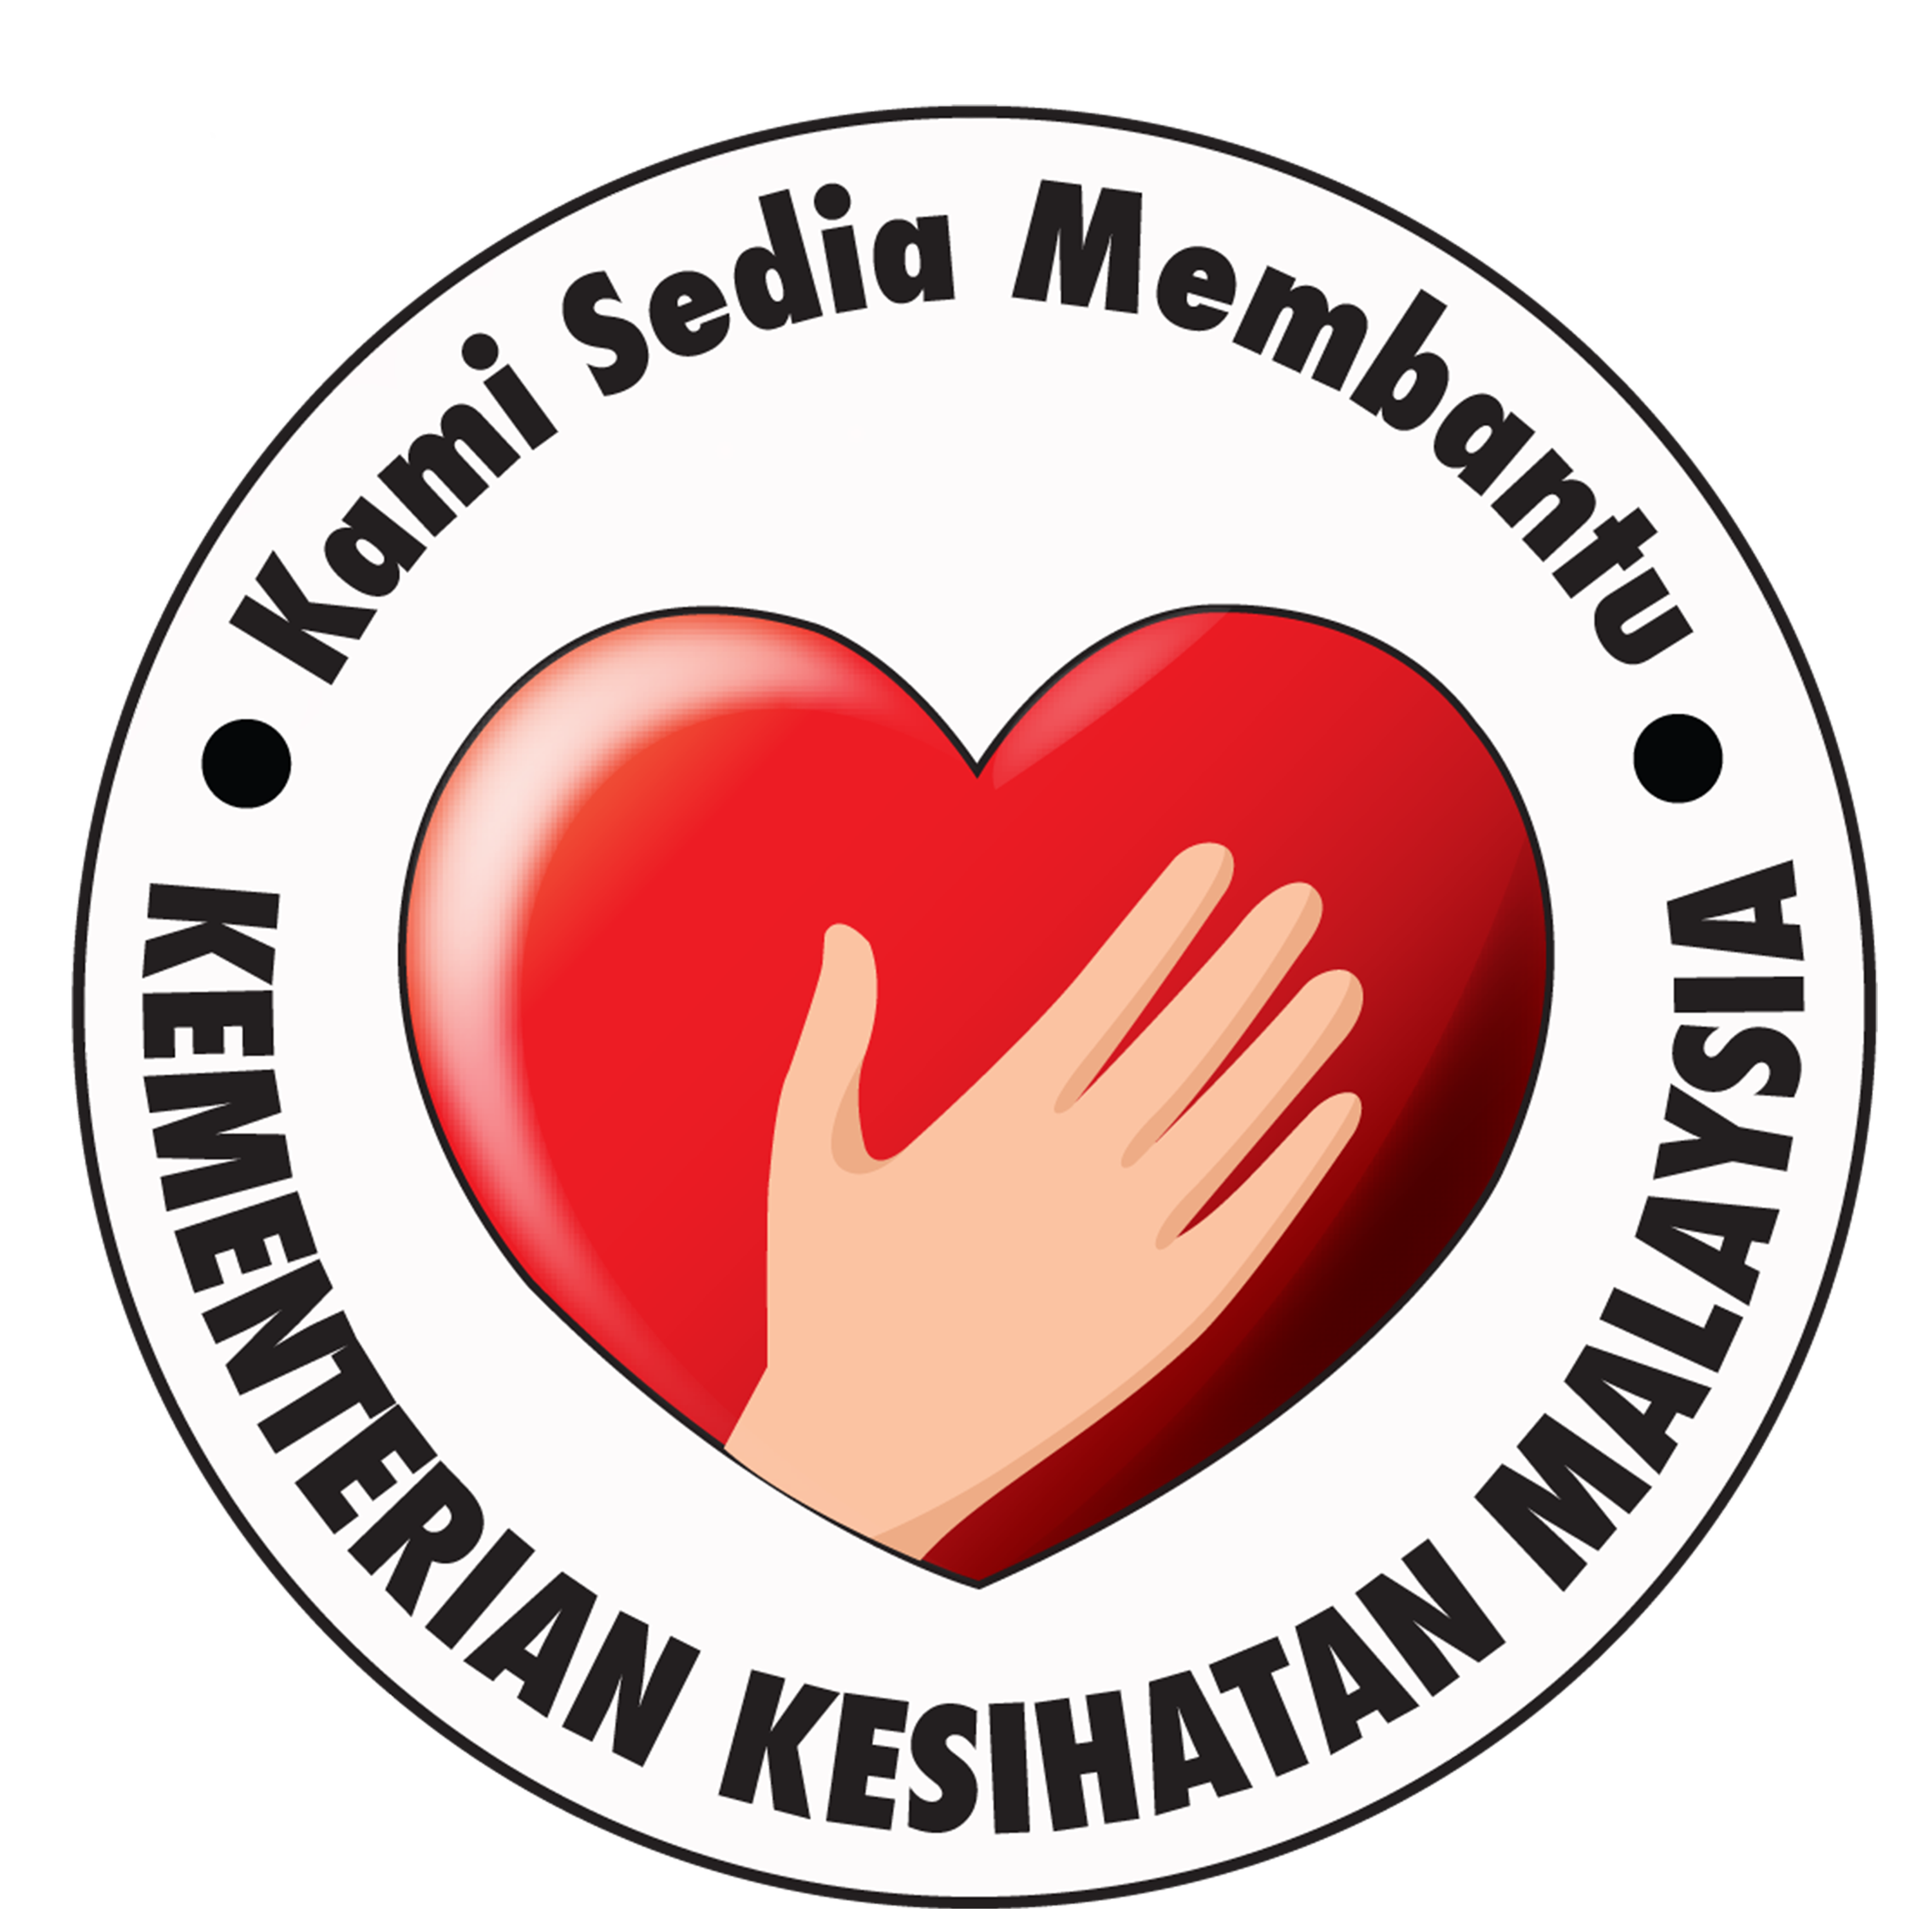 Kementerian Kesihatan Malaysia Logo - Riset